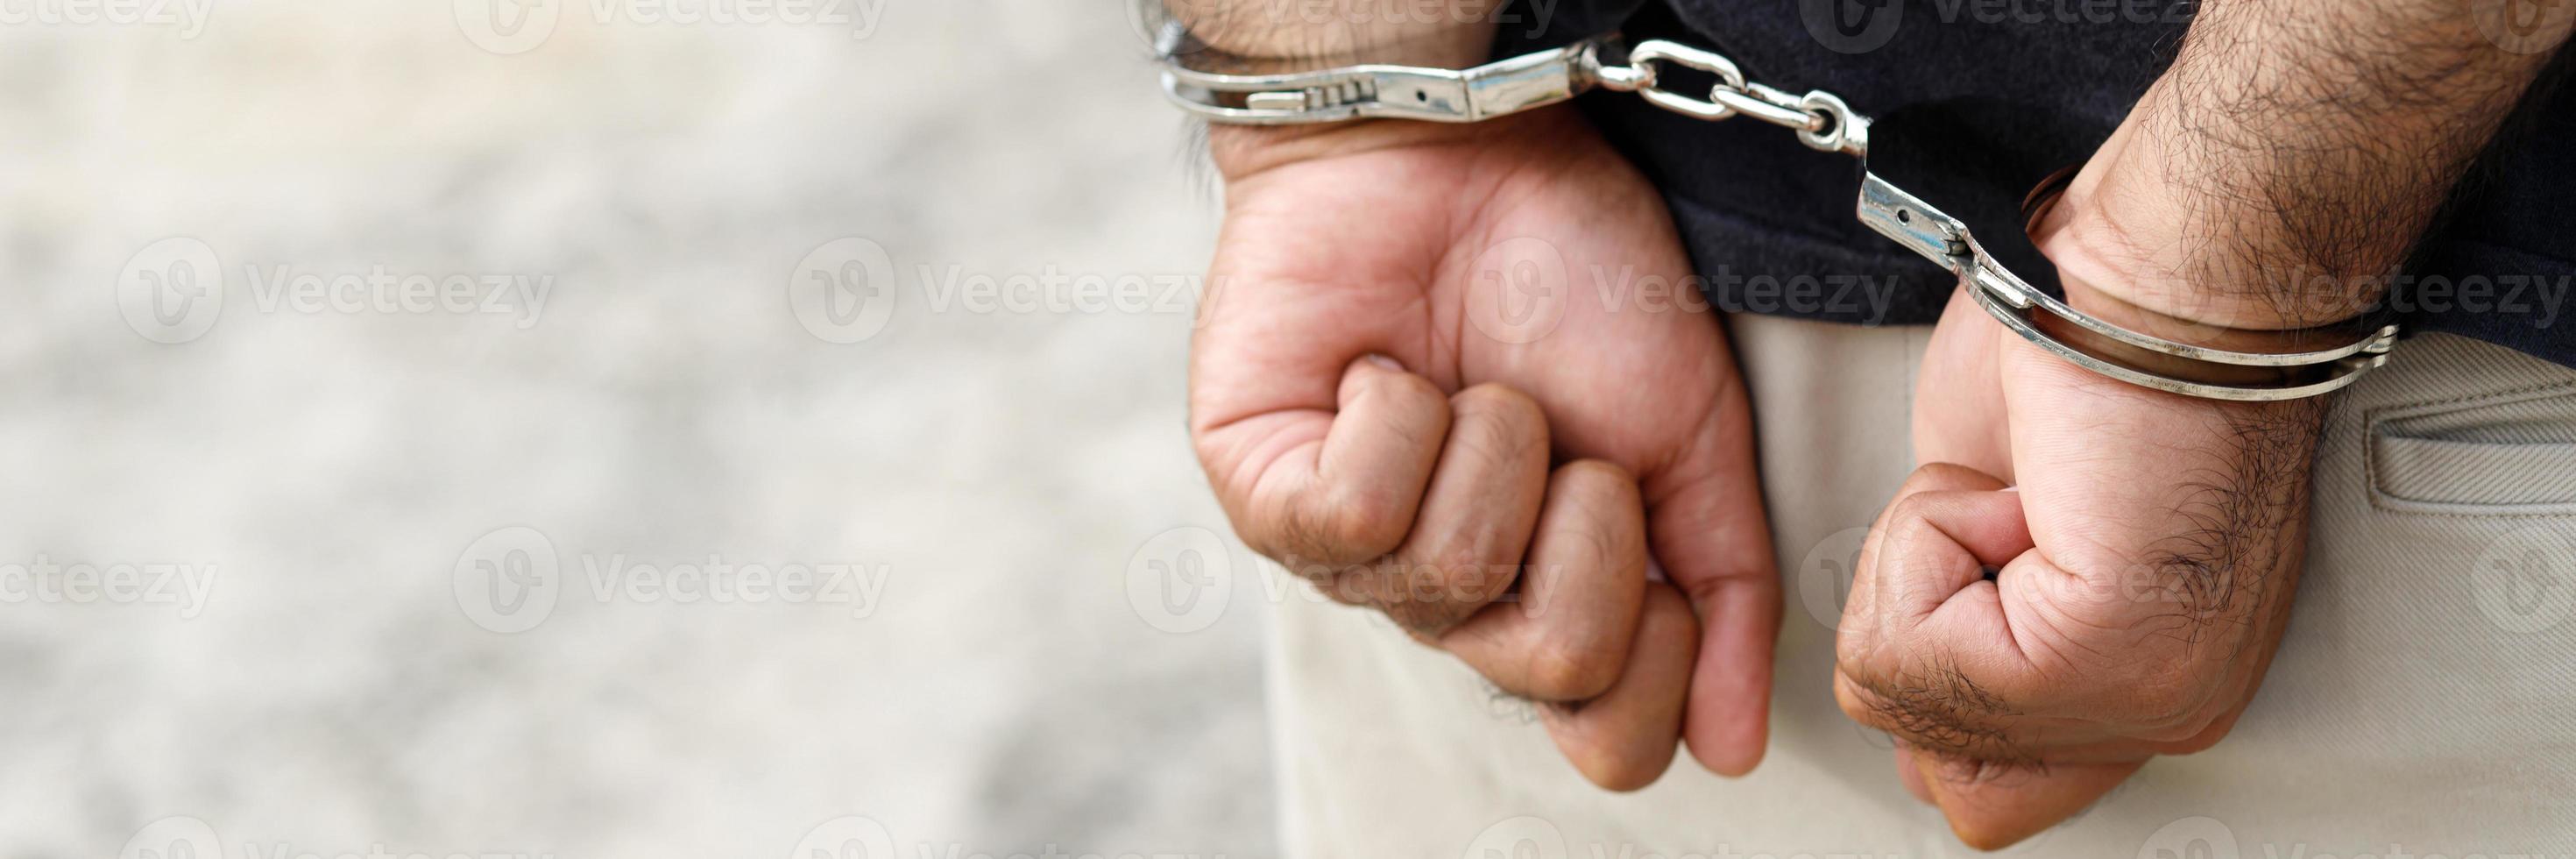 Homme prisonnier criminel debout menotté avec les mains derrière le dos photo